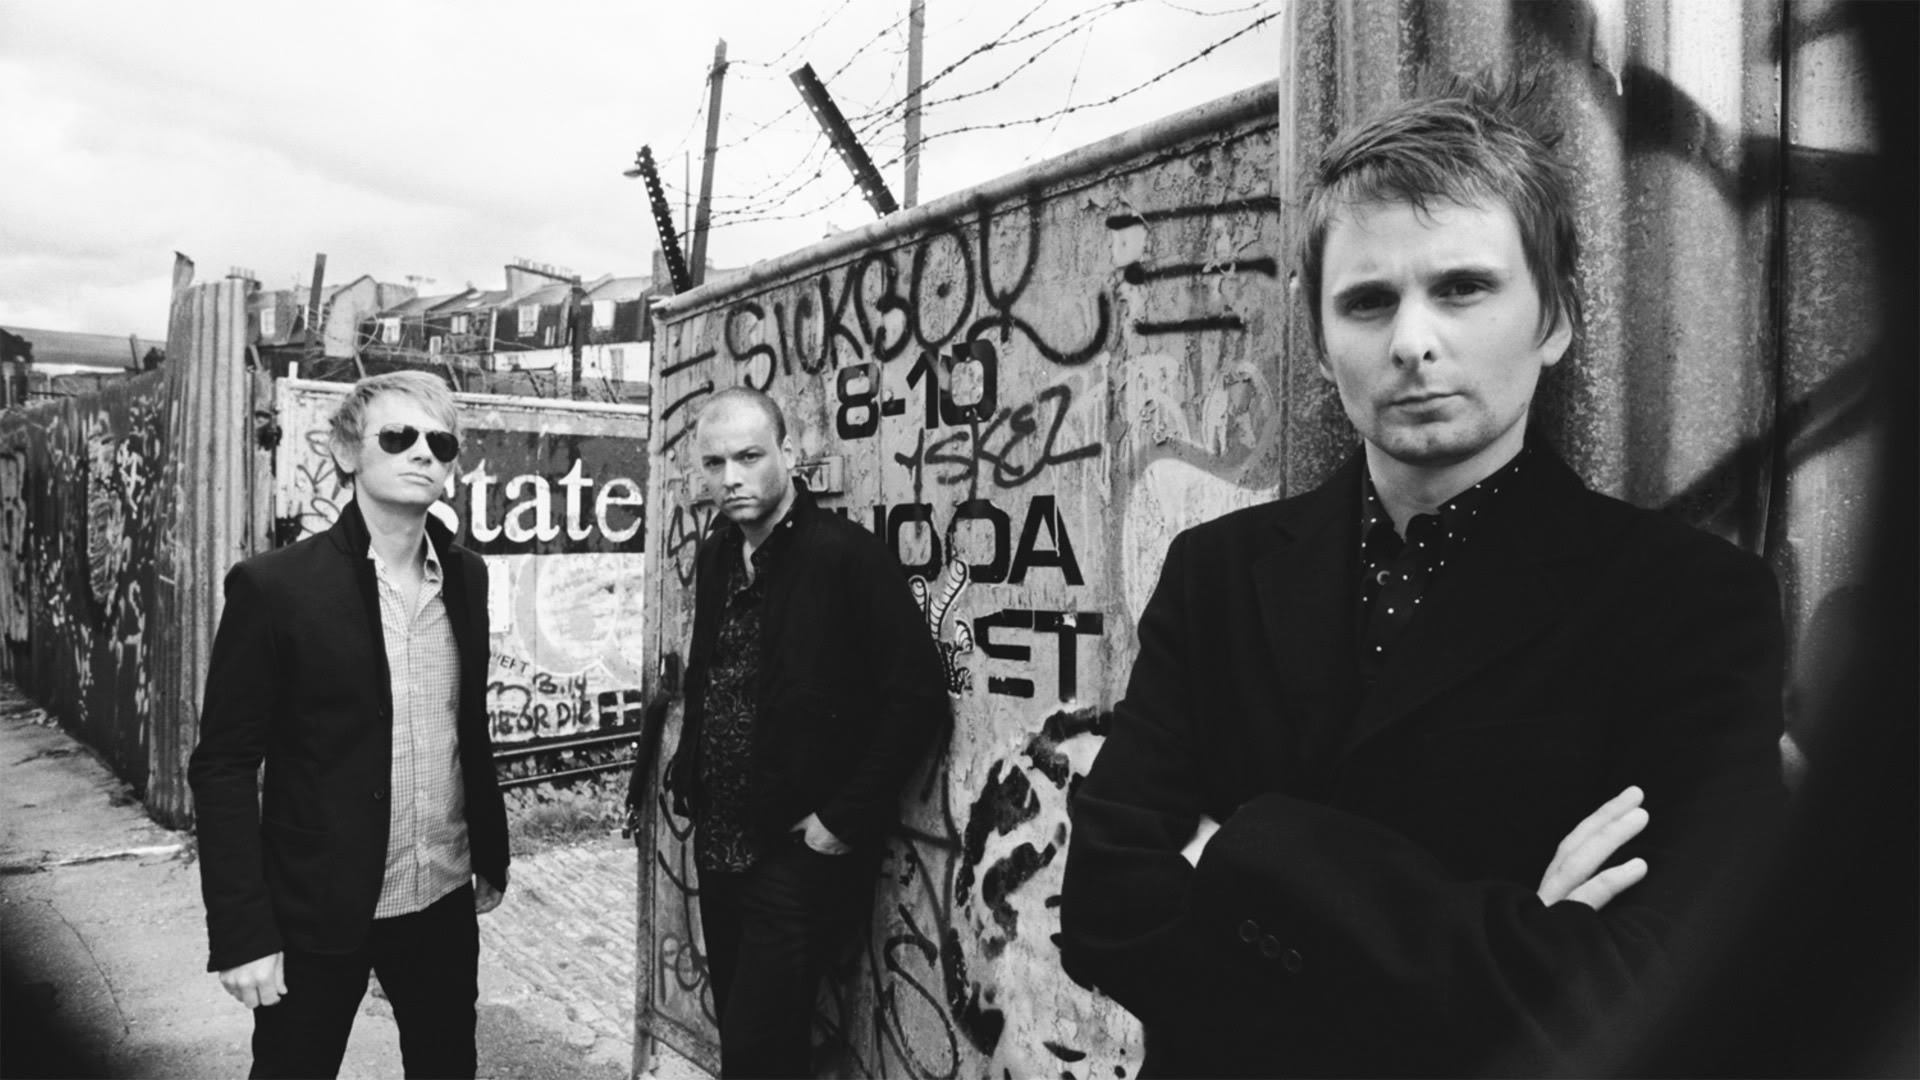 Британская группа Muse выступит в Москве на фестивале Park Live в июне. Изображение 1